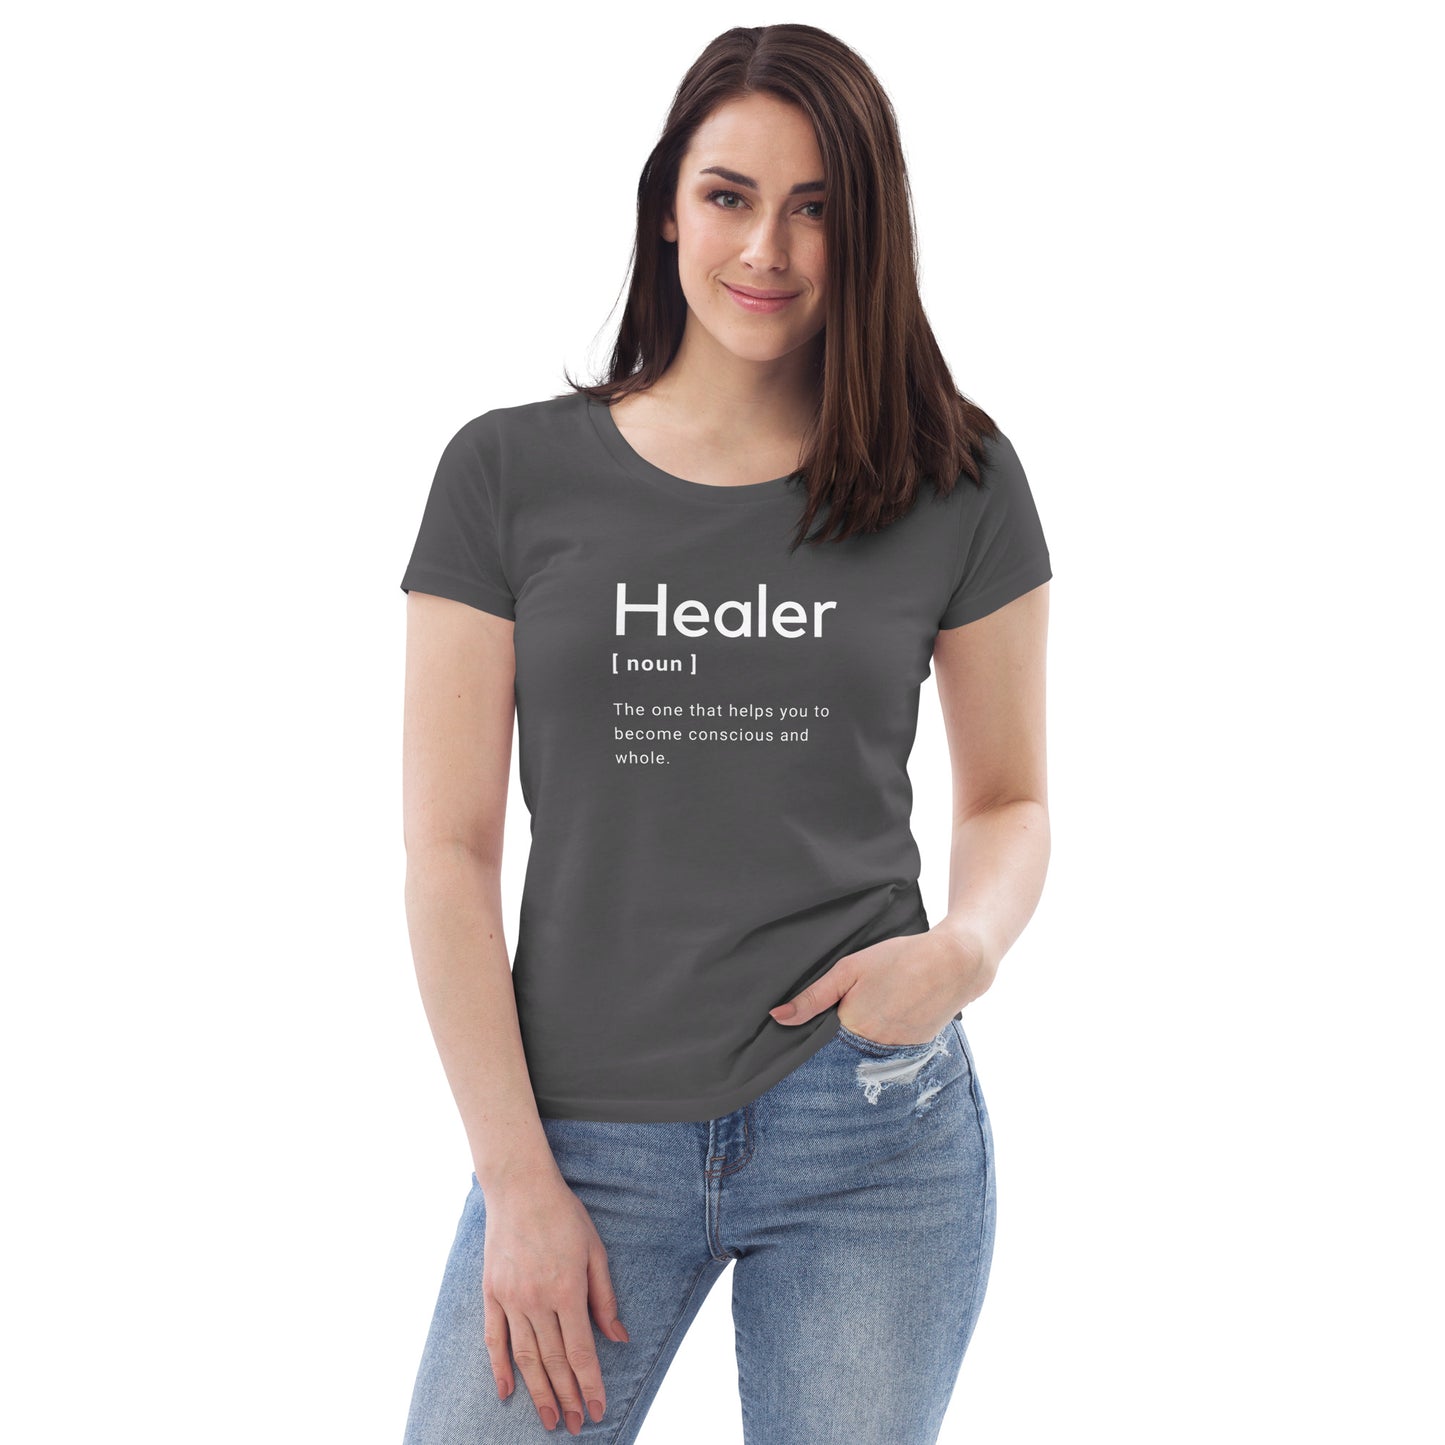 Healer, t-shirt